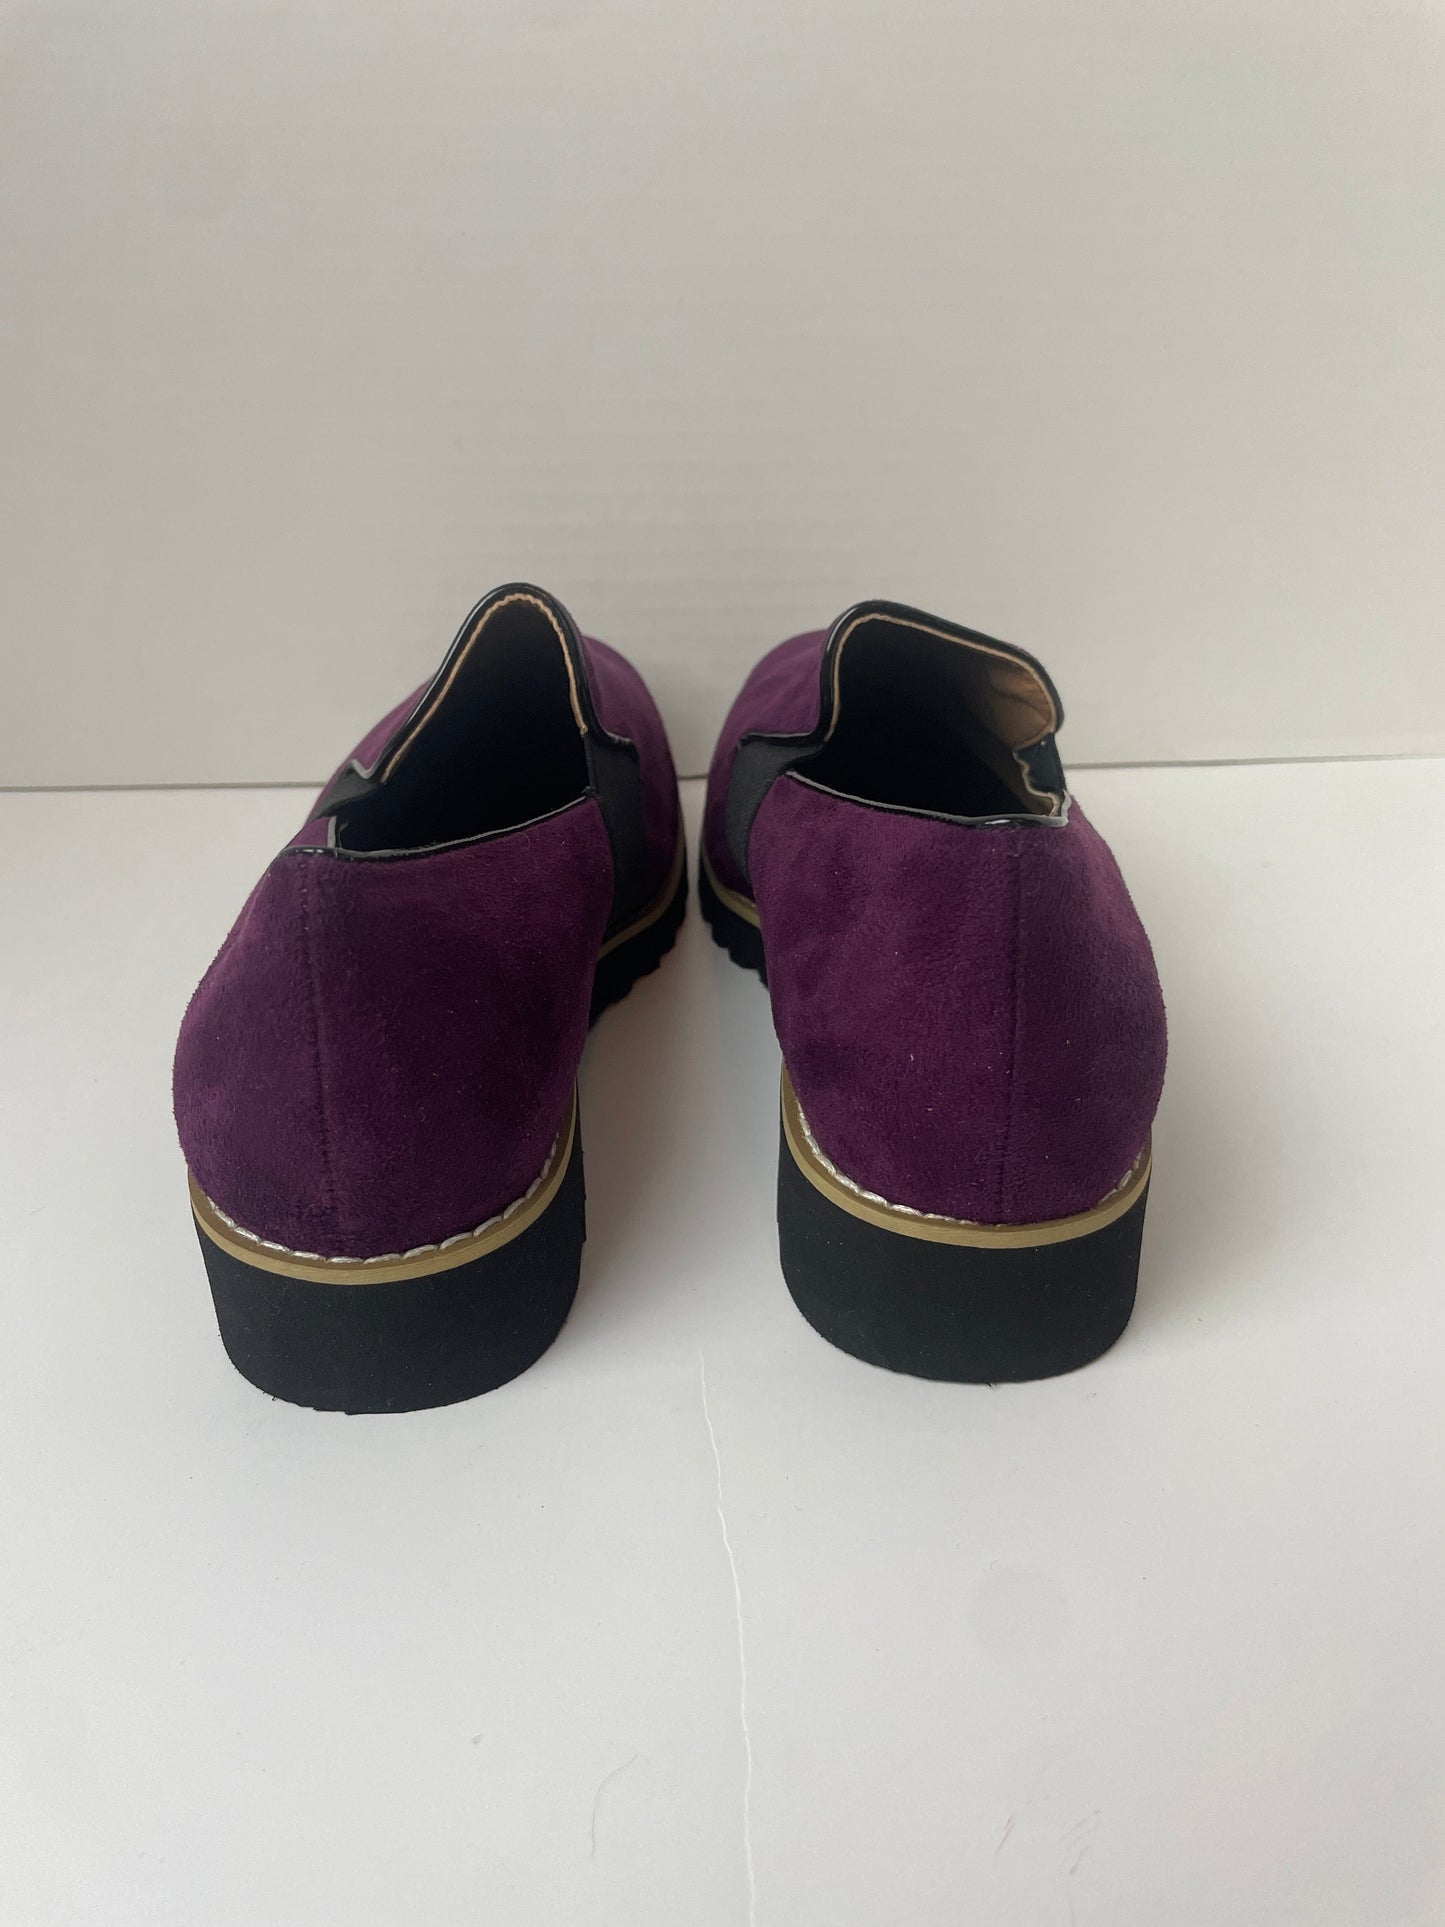 Purple Shoes Flats Clothes Mentor, Size 7